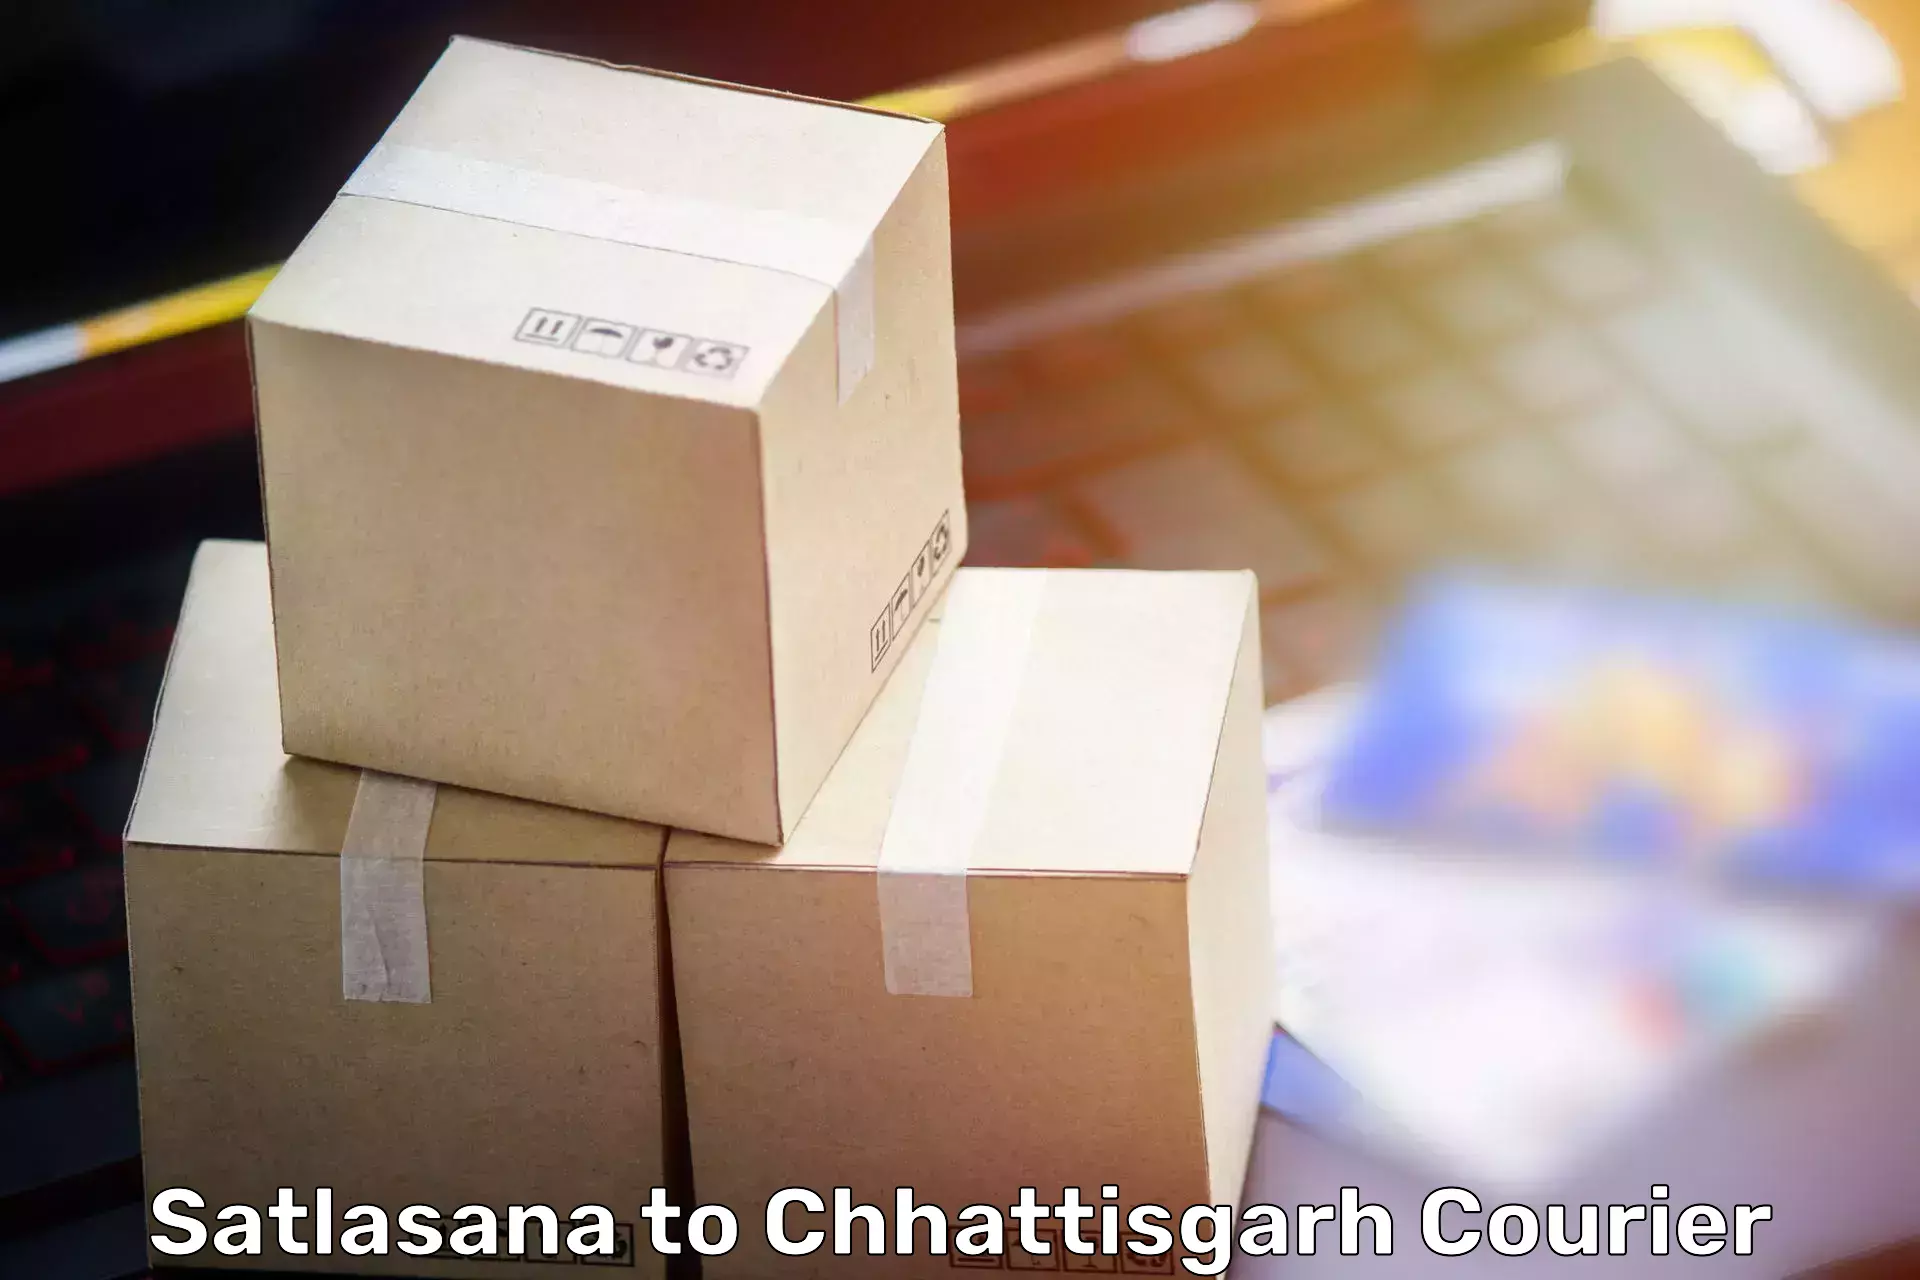 Reliable relocation services in Satlasana to Bijapur Chhattisgarh